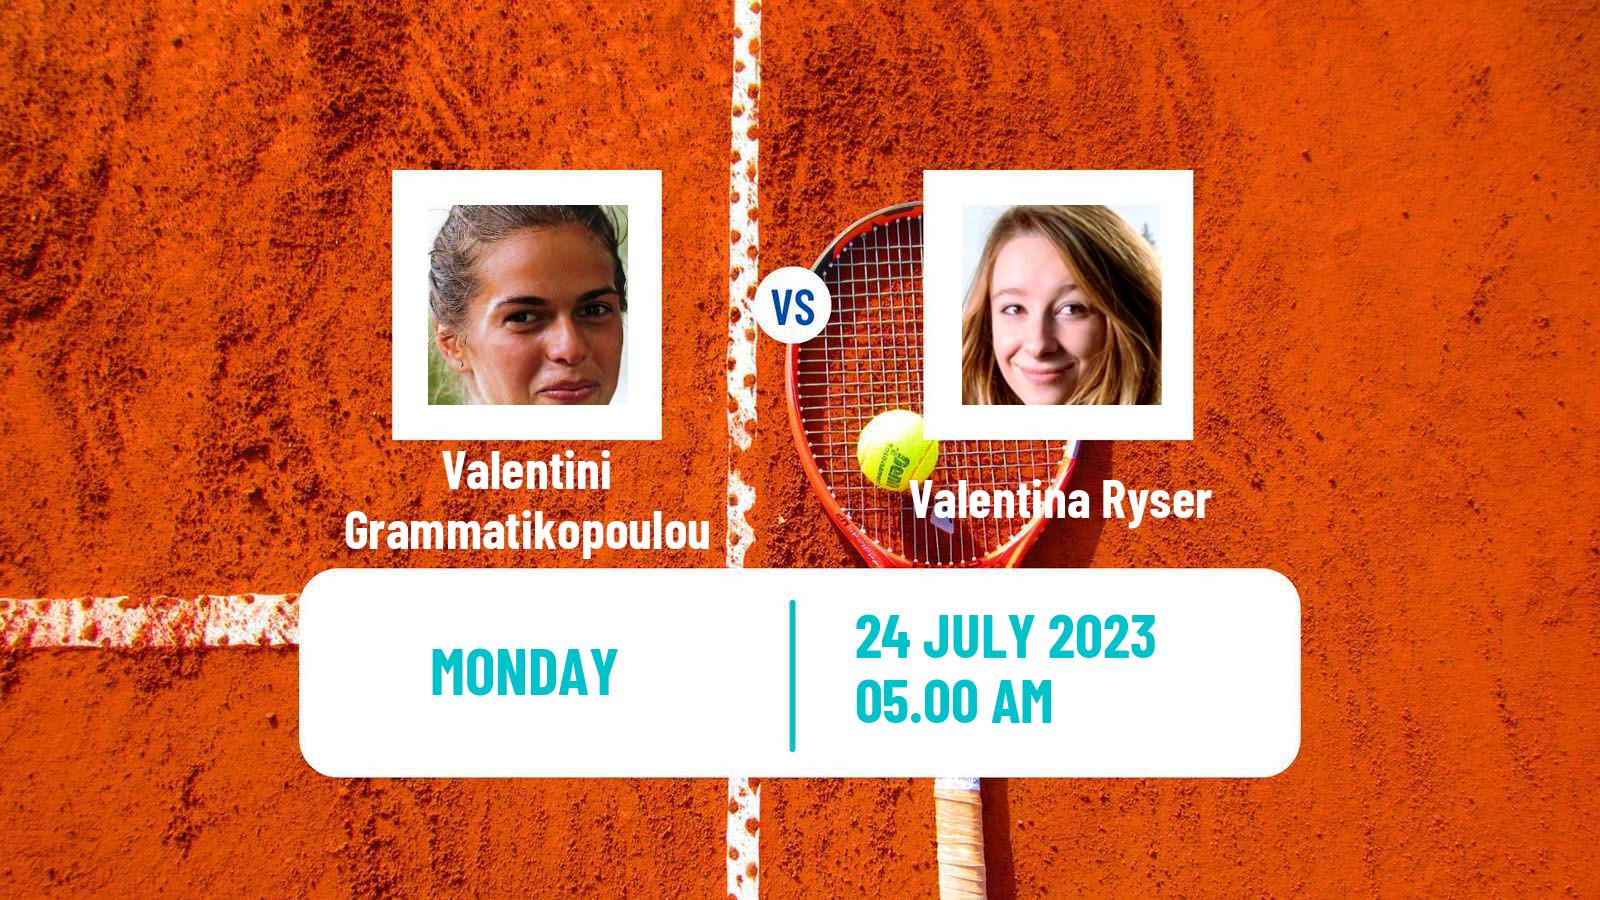 Tennis WTA Lausanne Valentini Grammatikopoulou - Valentina Ryser